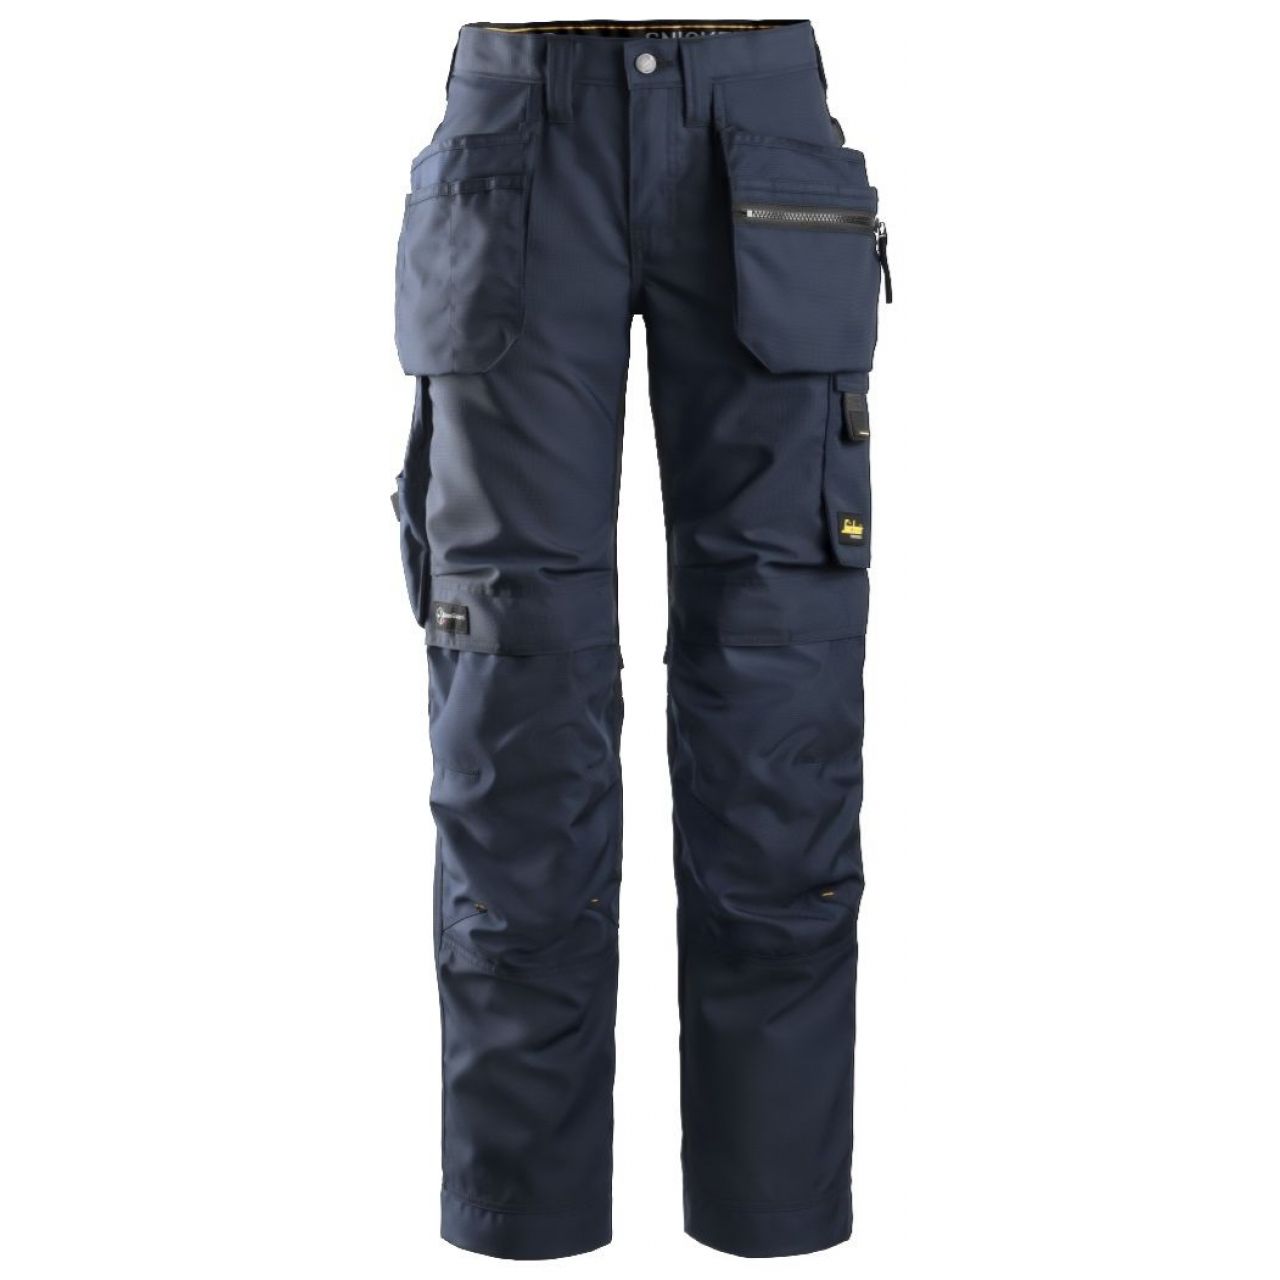 Pantalon de mujer AllroundWork+ con bolsillos flotantes azul marino-negro talla 088